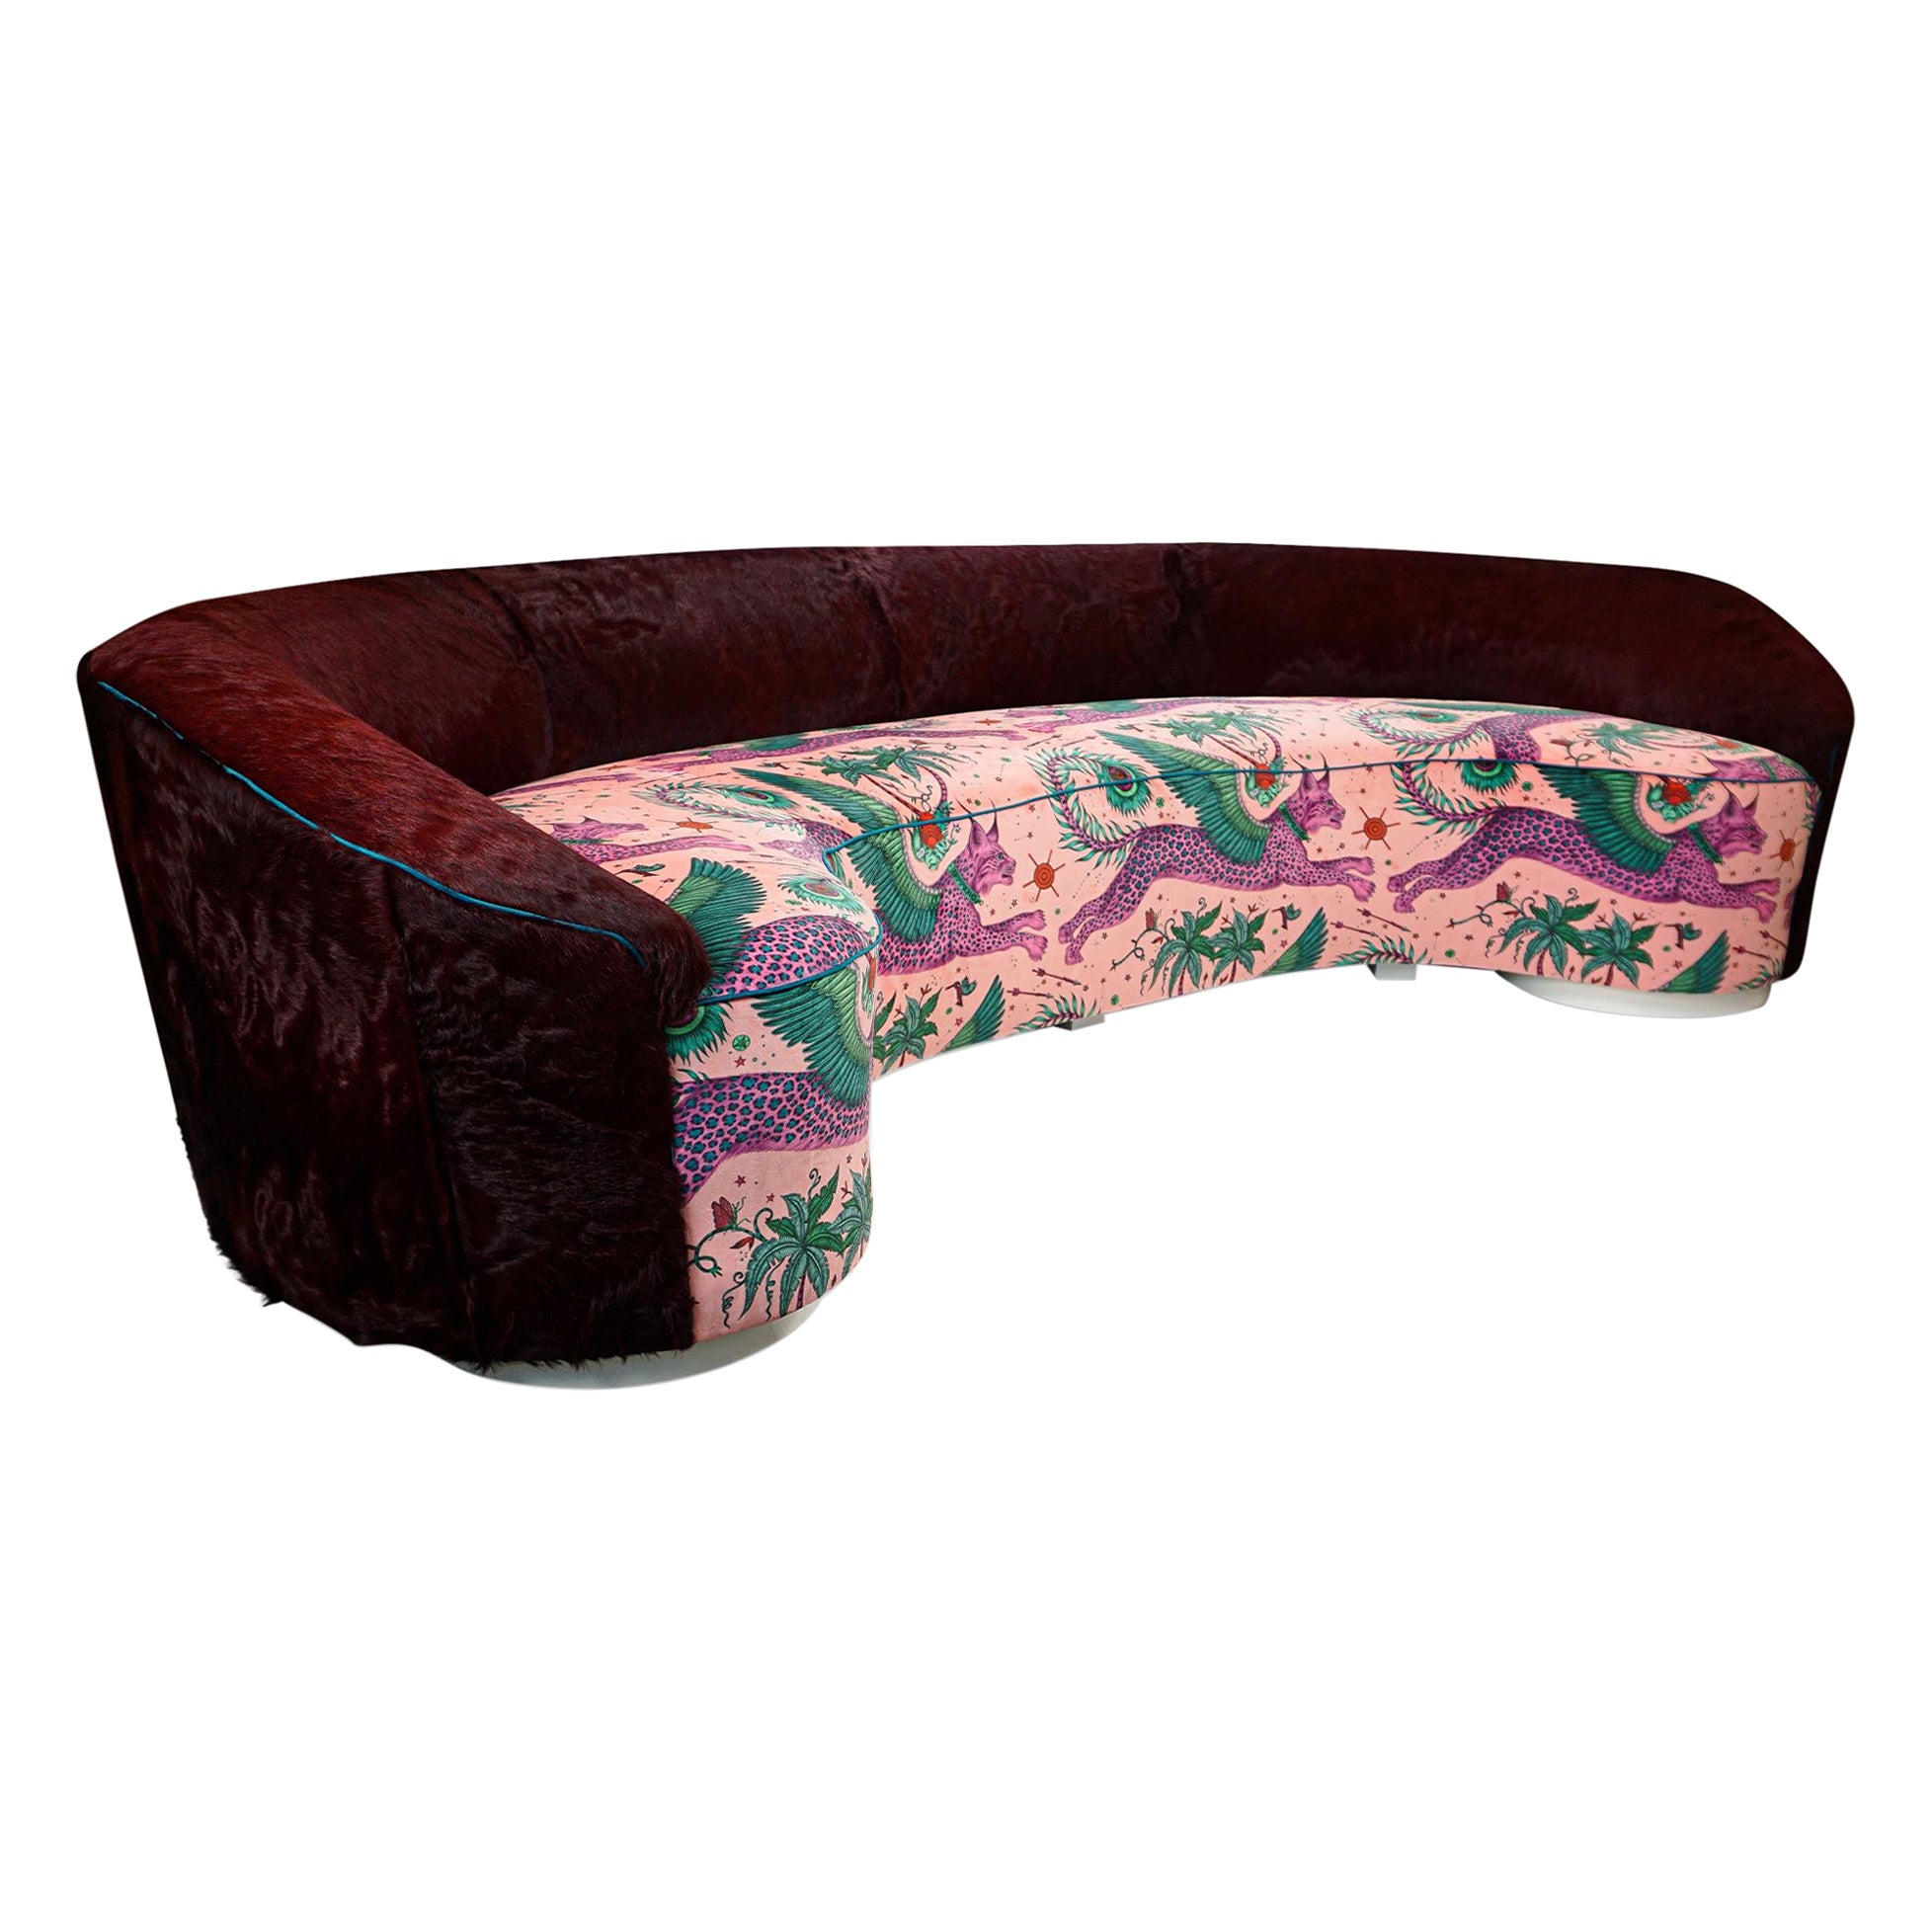 Gebogenes Sofa mit Ochsenblut-Kuhfell und fantastisch bedrucktem Samt, geschwungener Arm